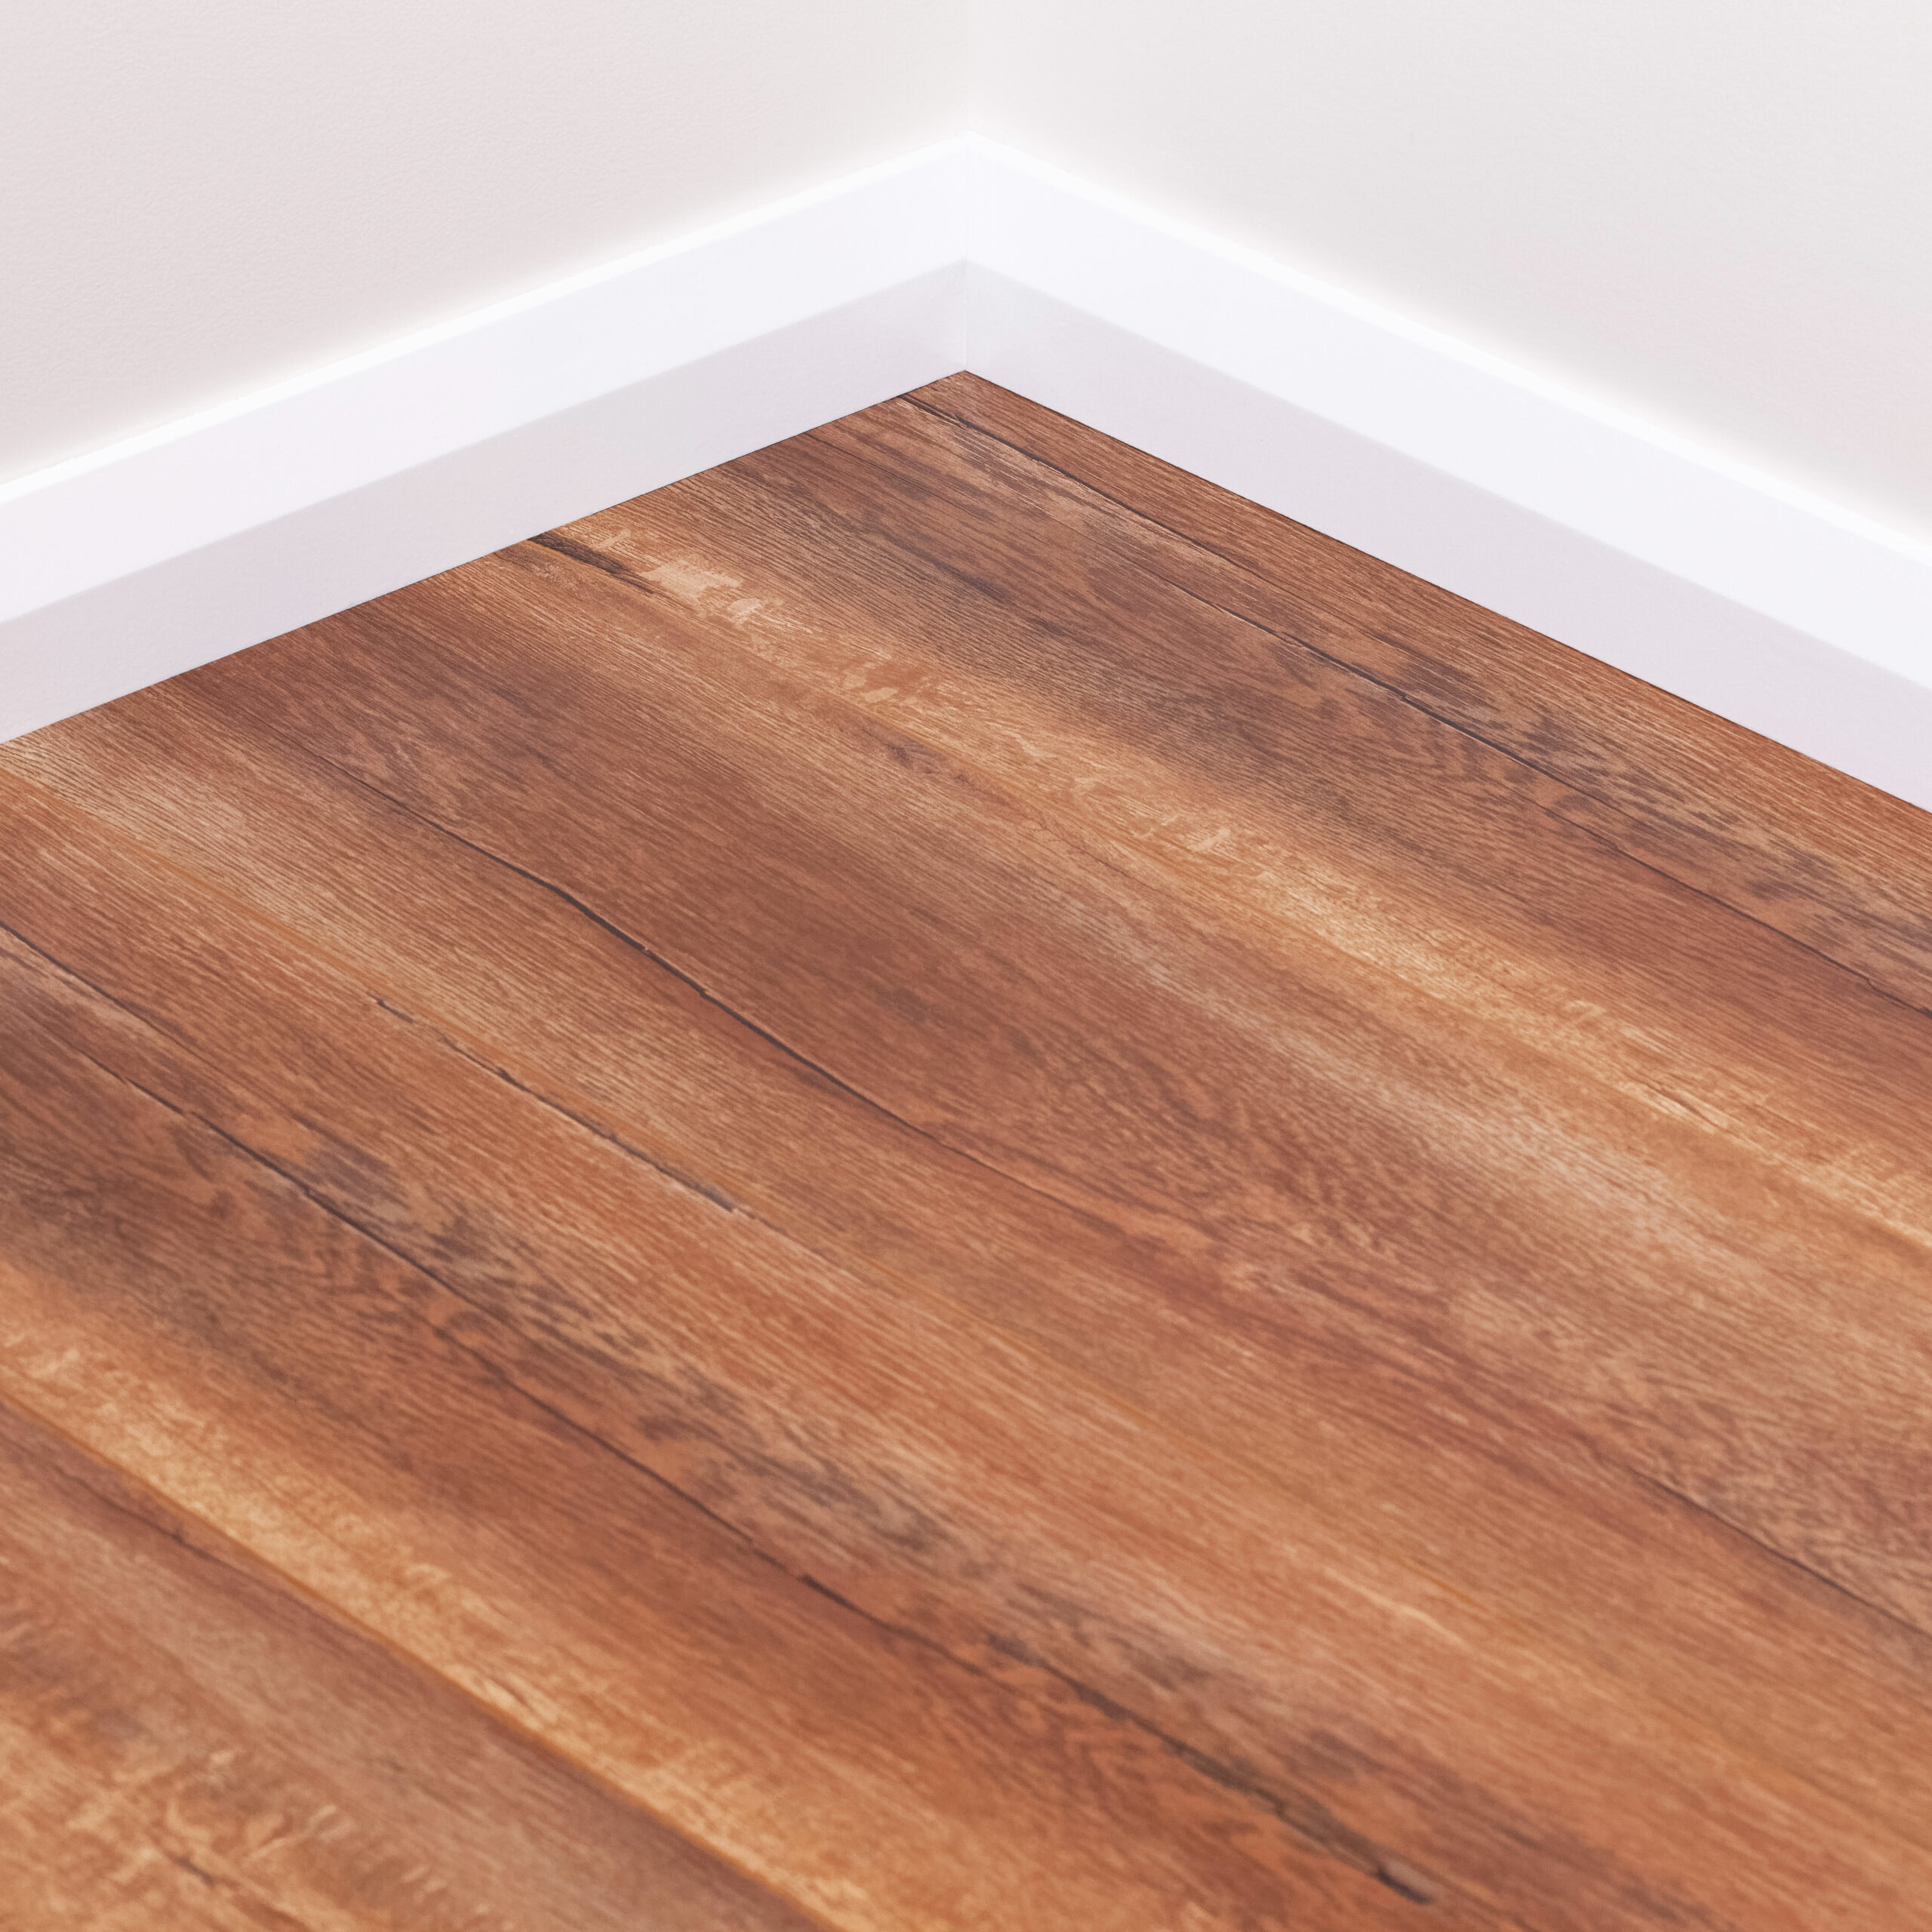 Caramel Oak Tanoa Flooring 12mm, Select Surfaces Caramel Laminate Flooring